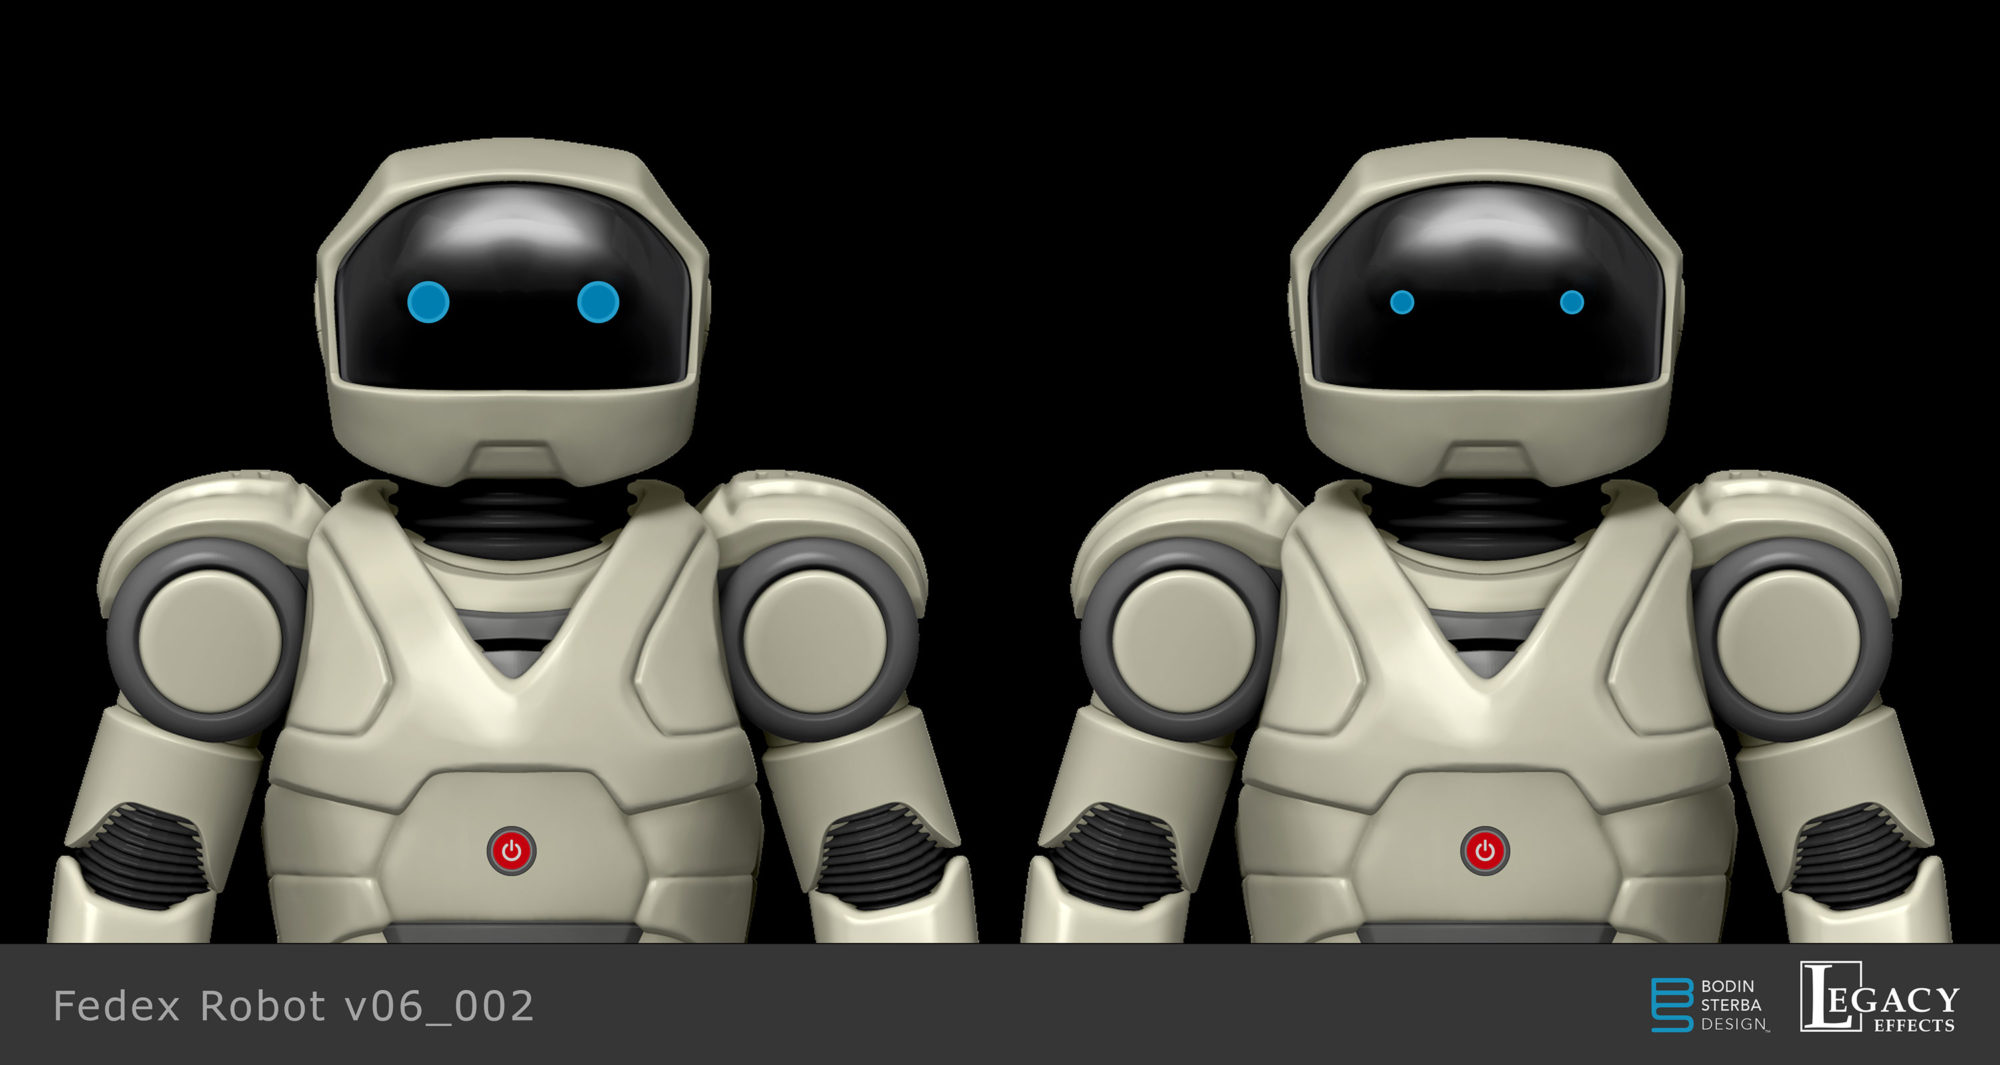 Robot design for Fedex commercial